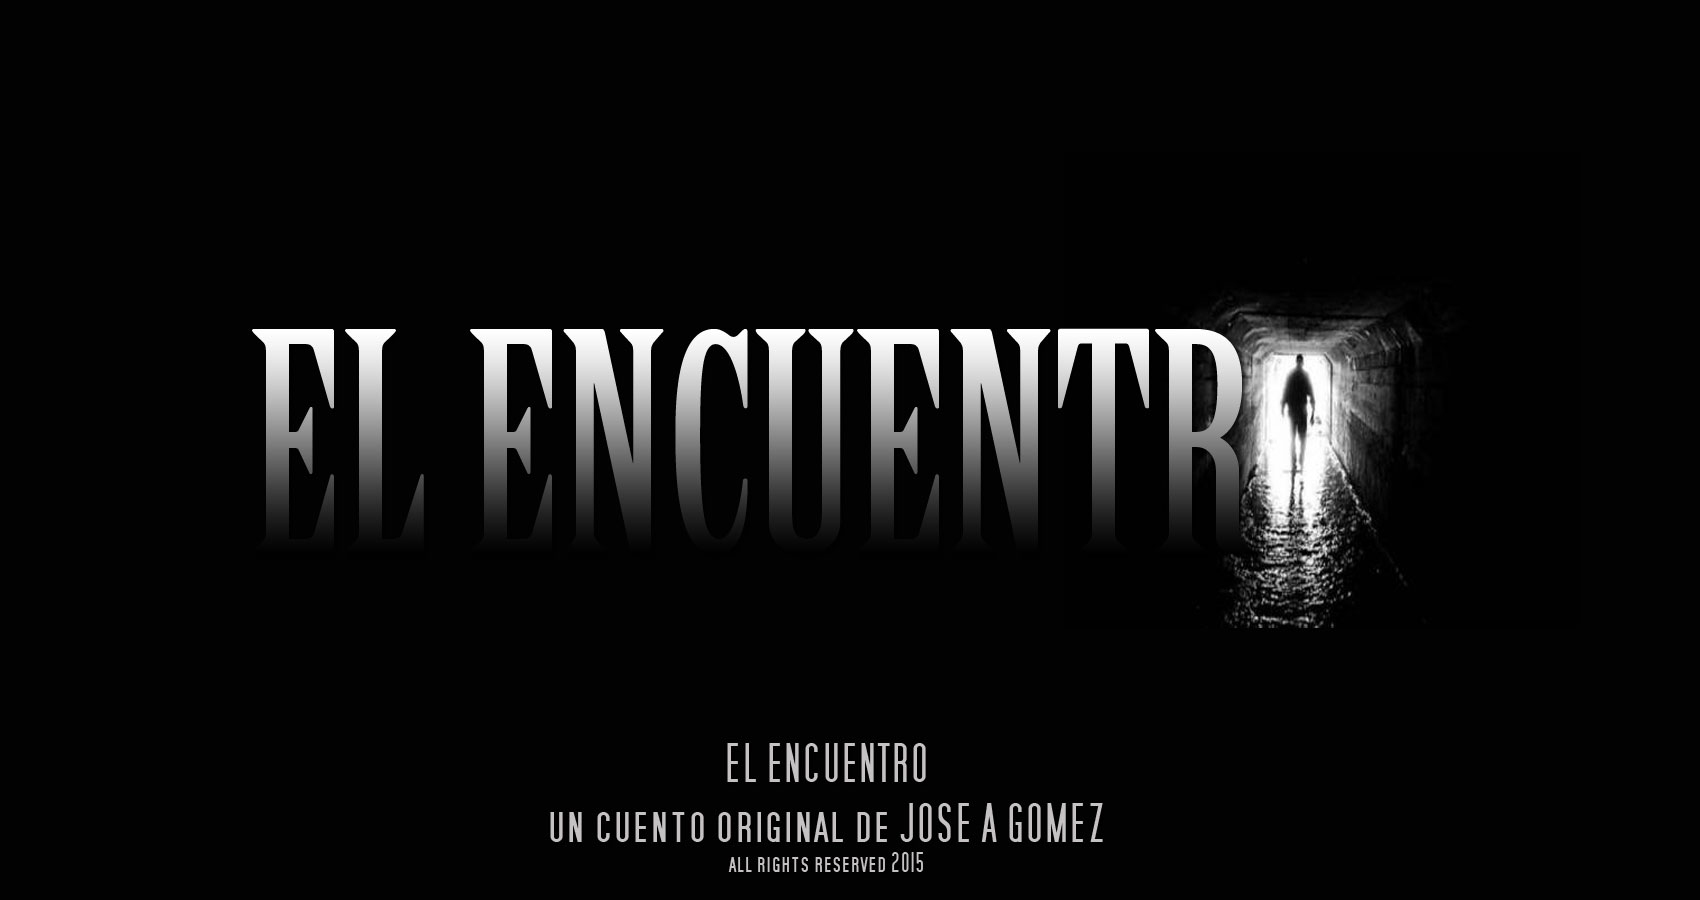 El Encuentro by Jose A Gomez at Spillwords.com